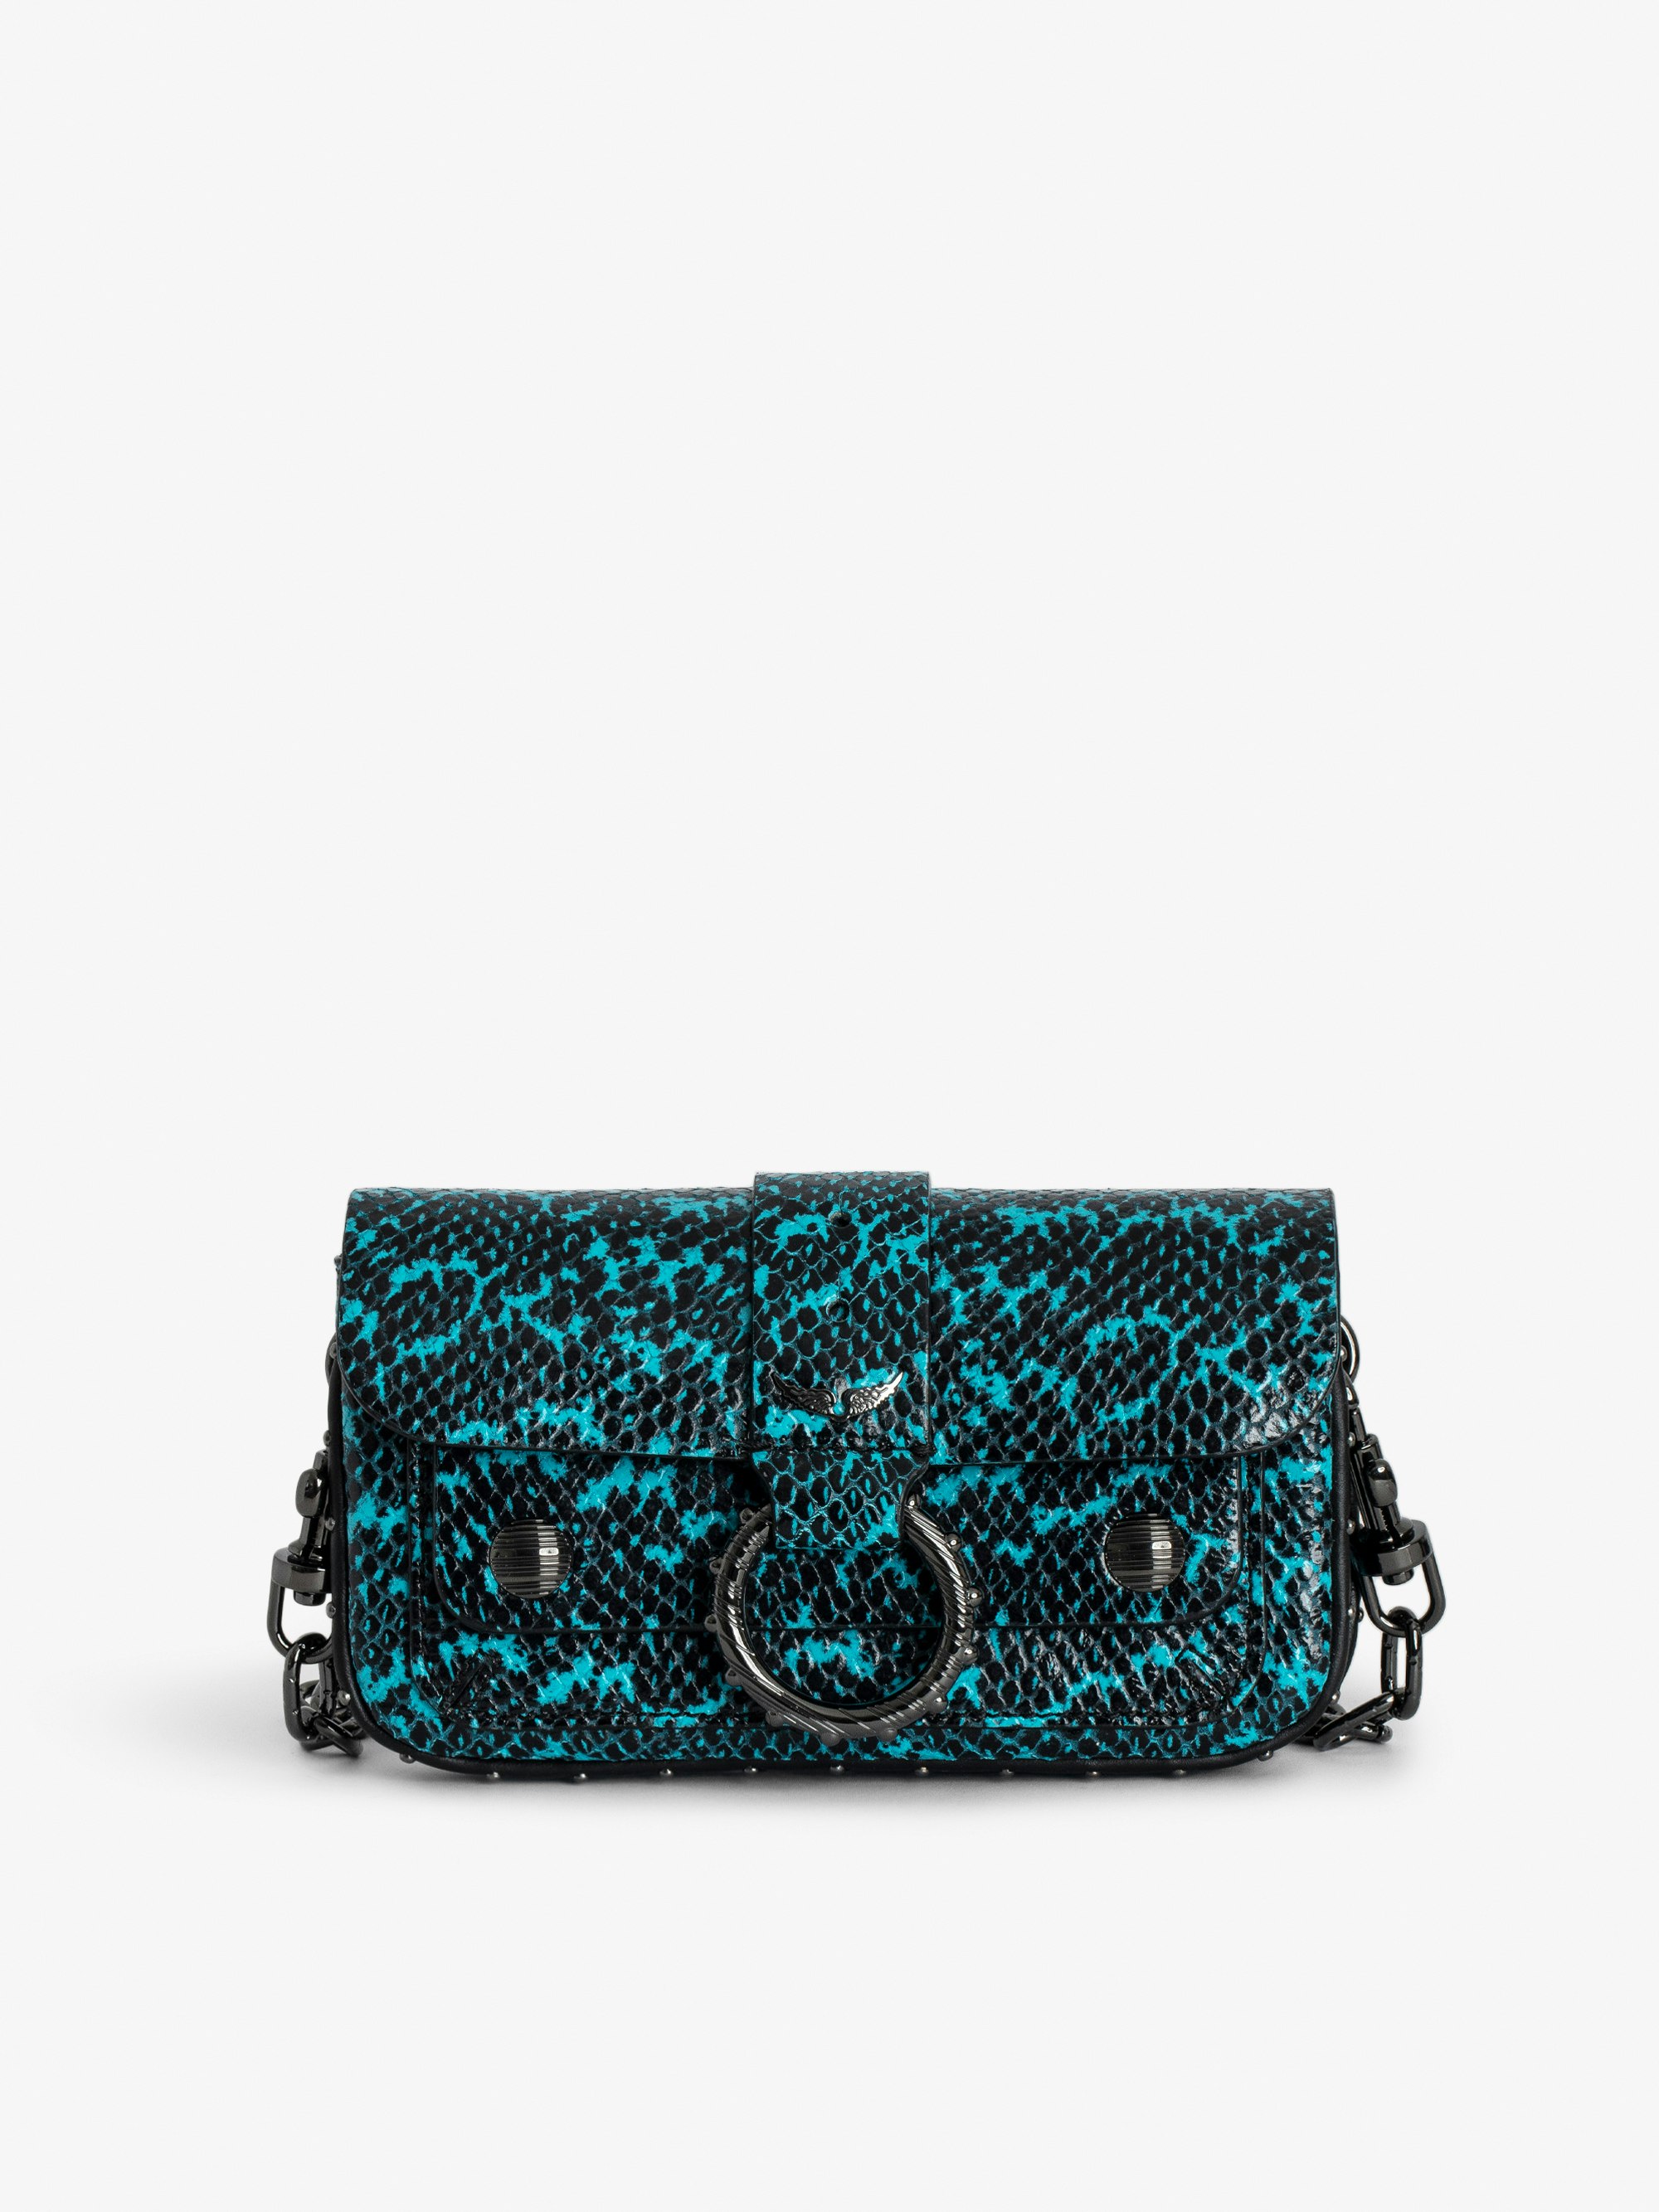 Sac Kate Wallet Wild - Designed by Kate Moss for Zadig&Voltaire.  Mini sac en cuir effet python bleu à anneau et chaîne.